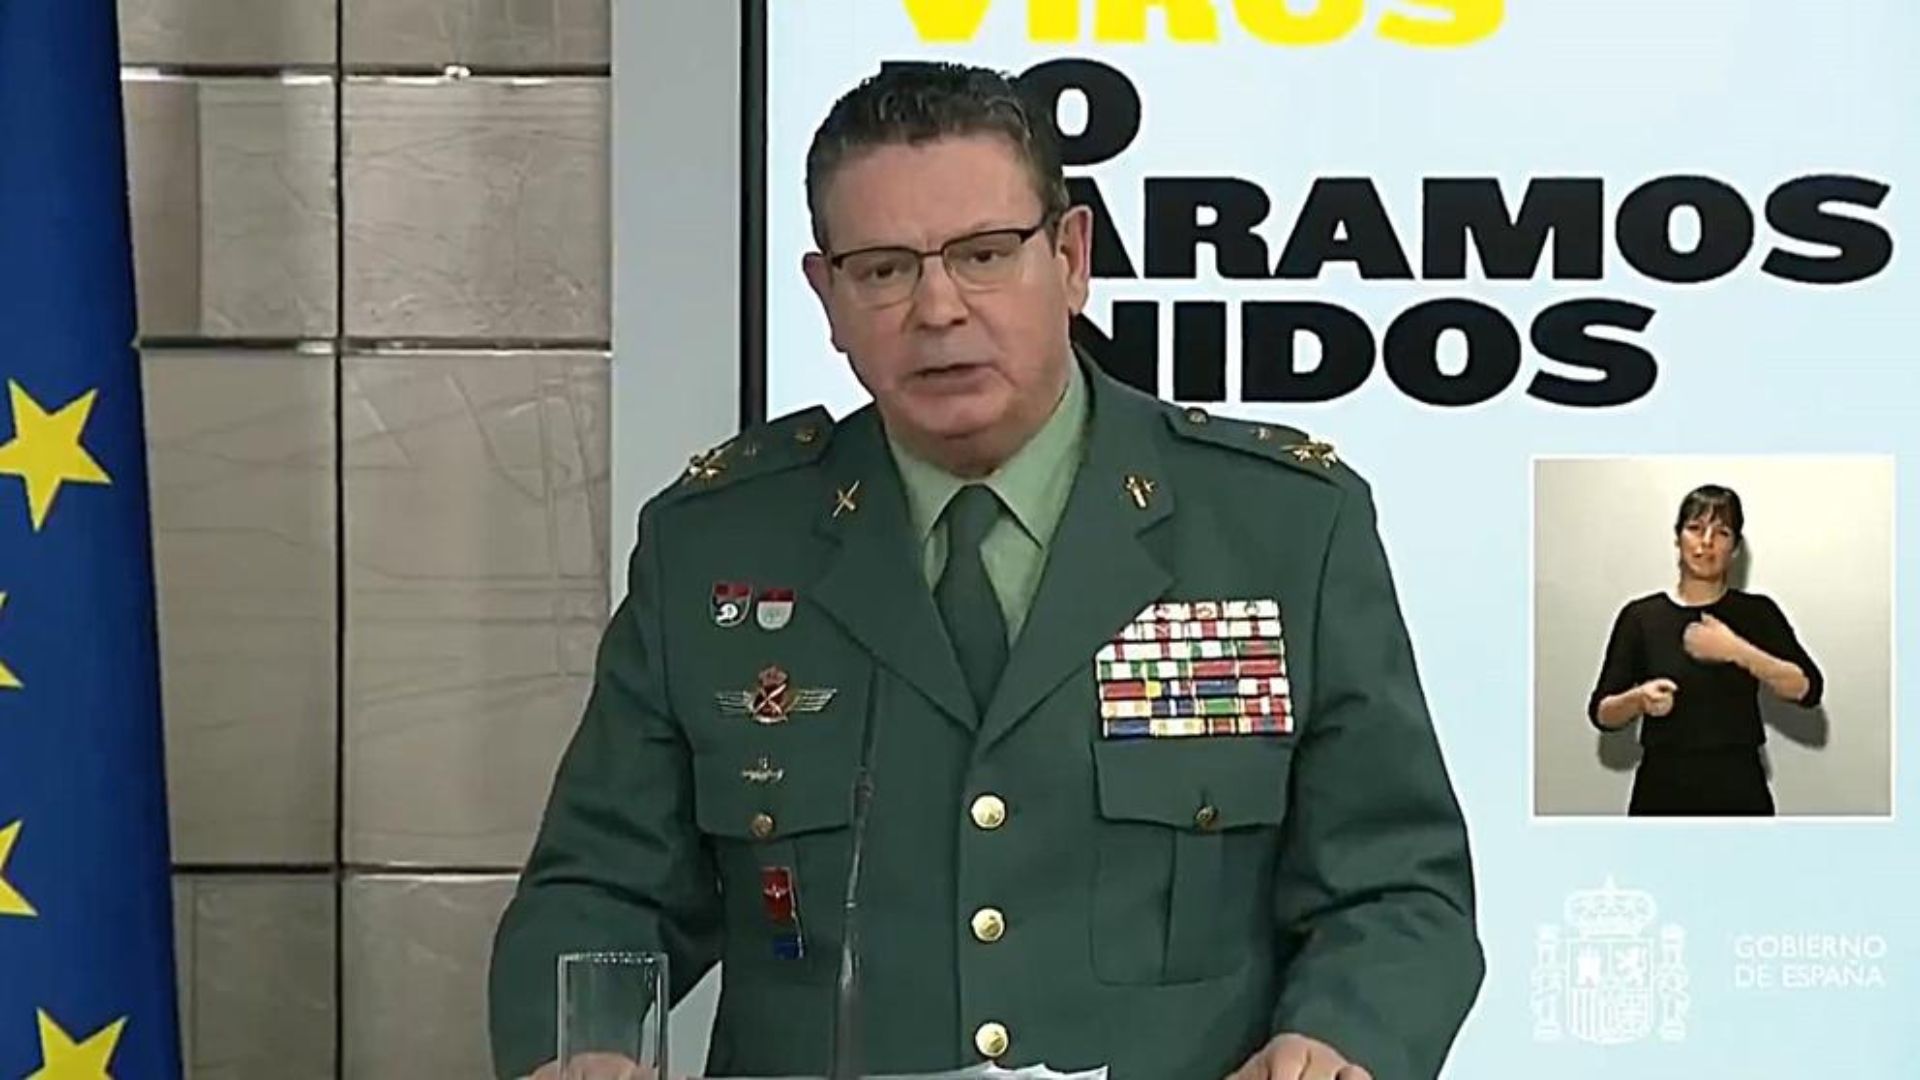 Dimite el número dos de la Guardia Civil, Laurentino Ceña, un día después de la destitución de Pérez de los Cobos